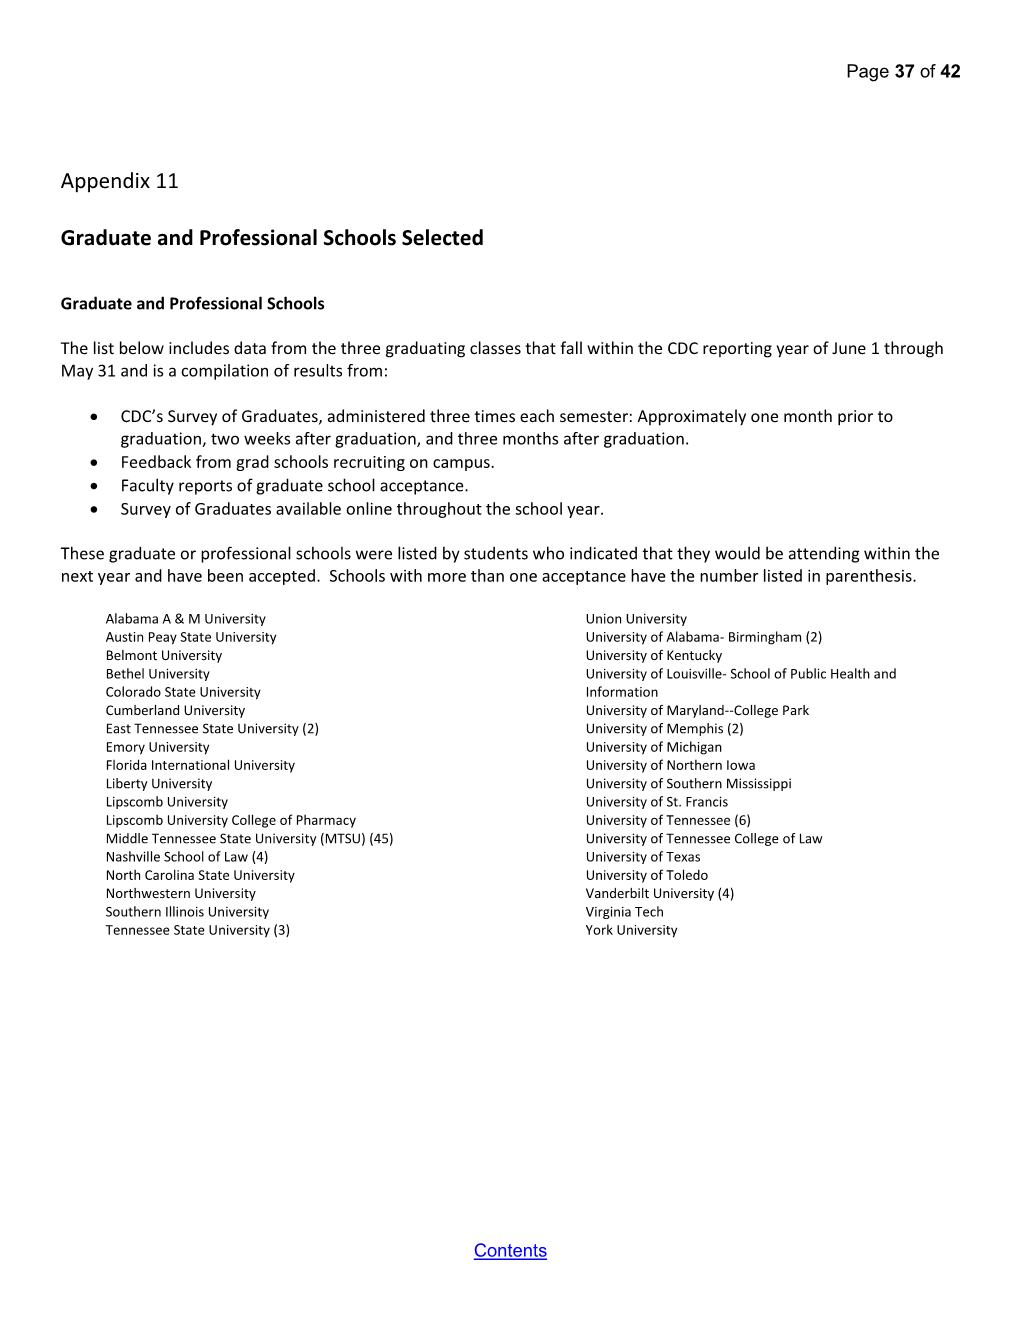 Appendix 11 Graduate and Professional Schools Selected